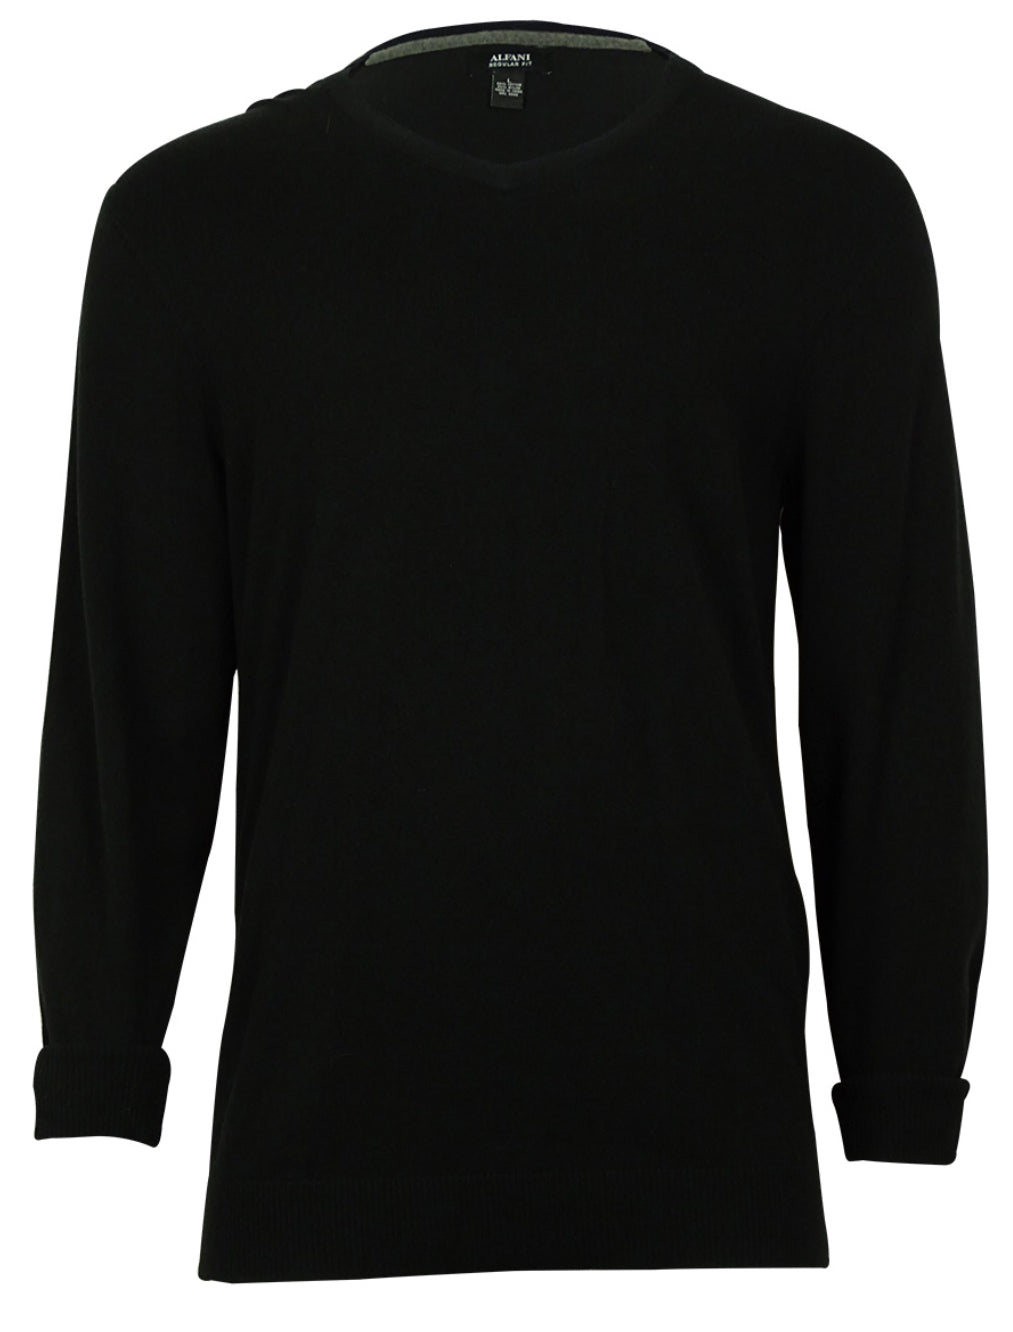 Alfani Men's V Neck Regular Fit Cotton Blend Light Sweater Deep Black Size Large L by Brands Overstock | Brands Overstock